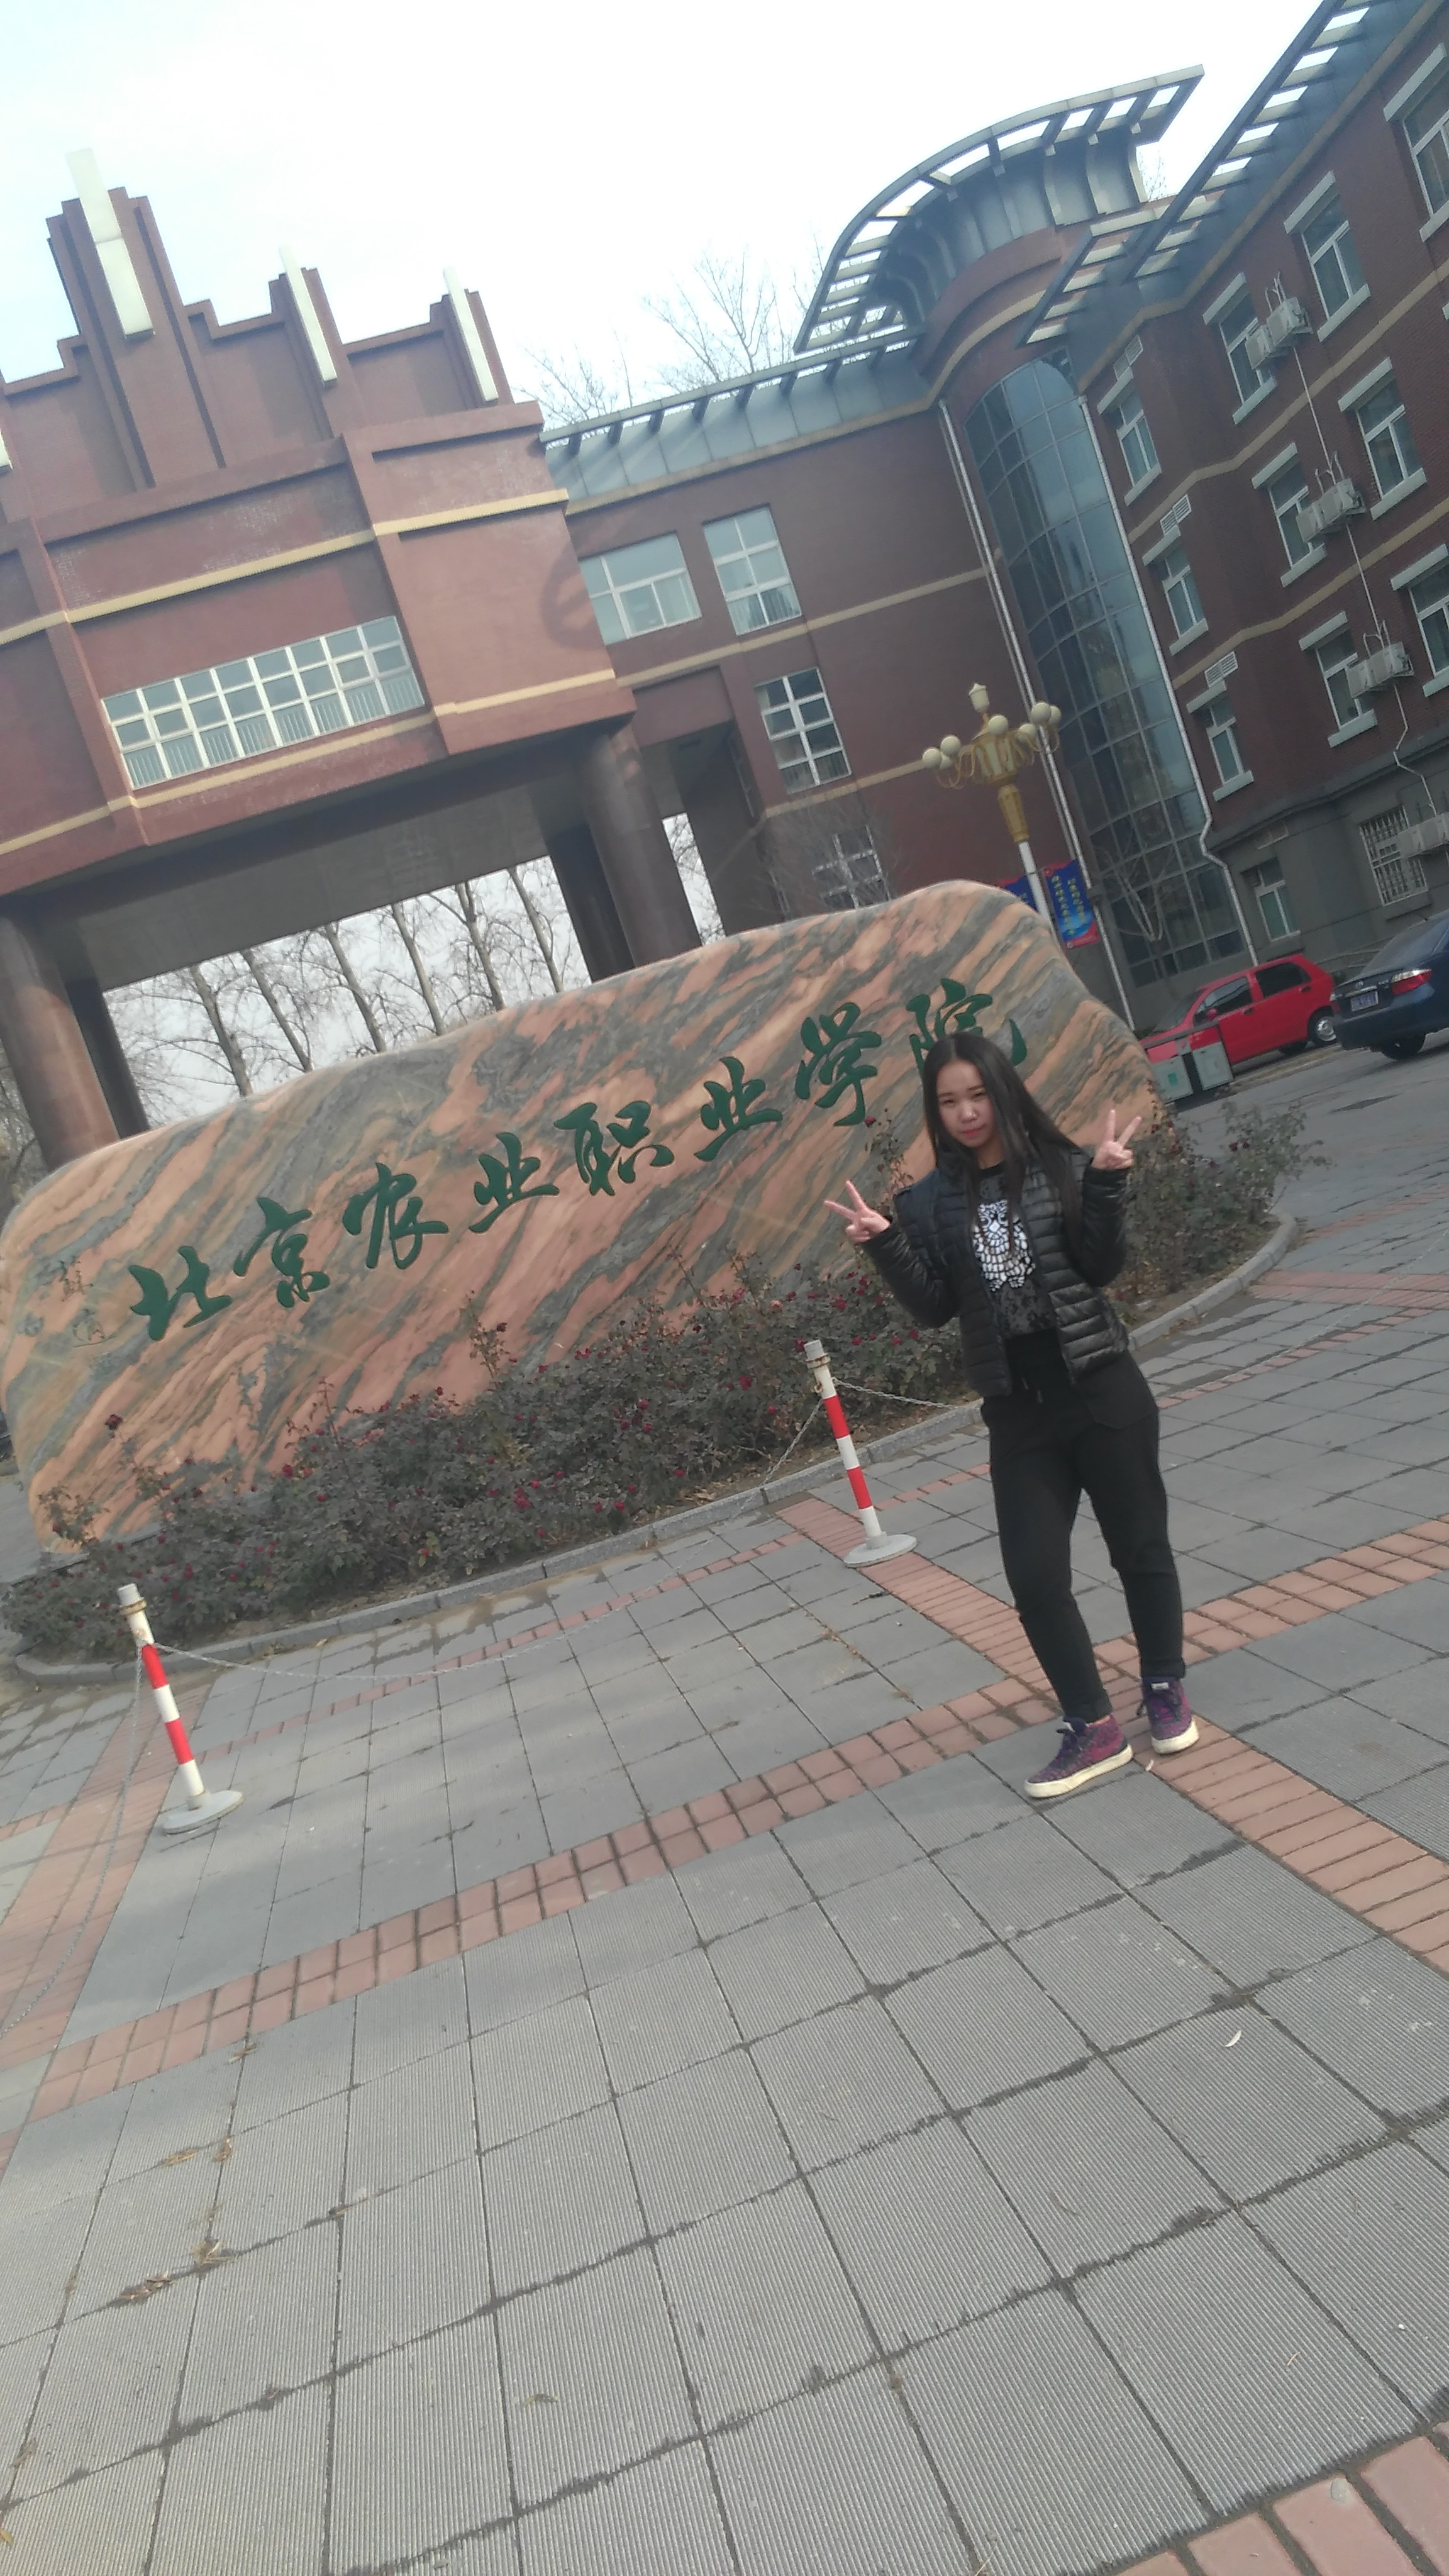 铁路专业毕业生甄泓然就读于北京农业职业学院